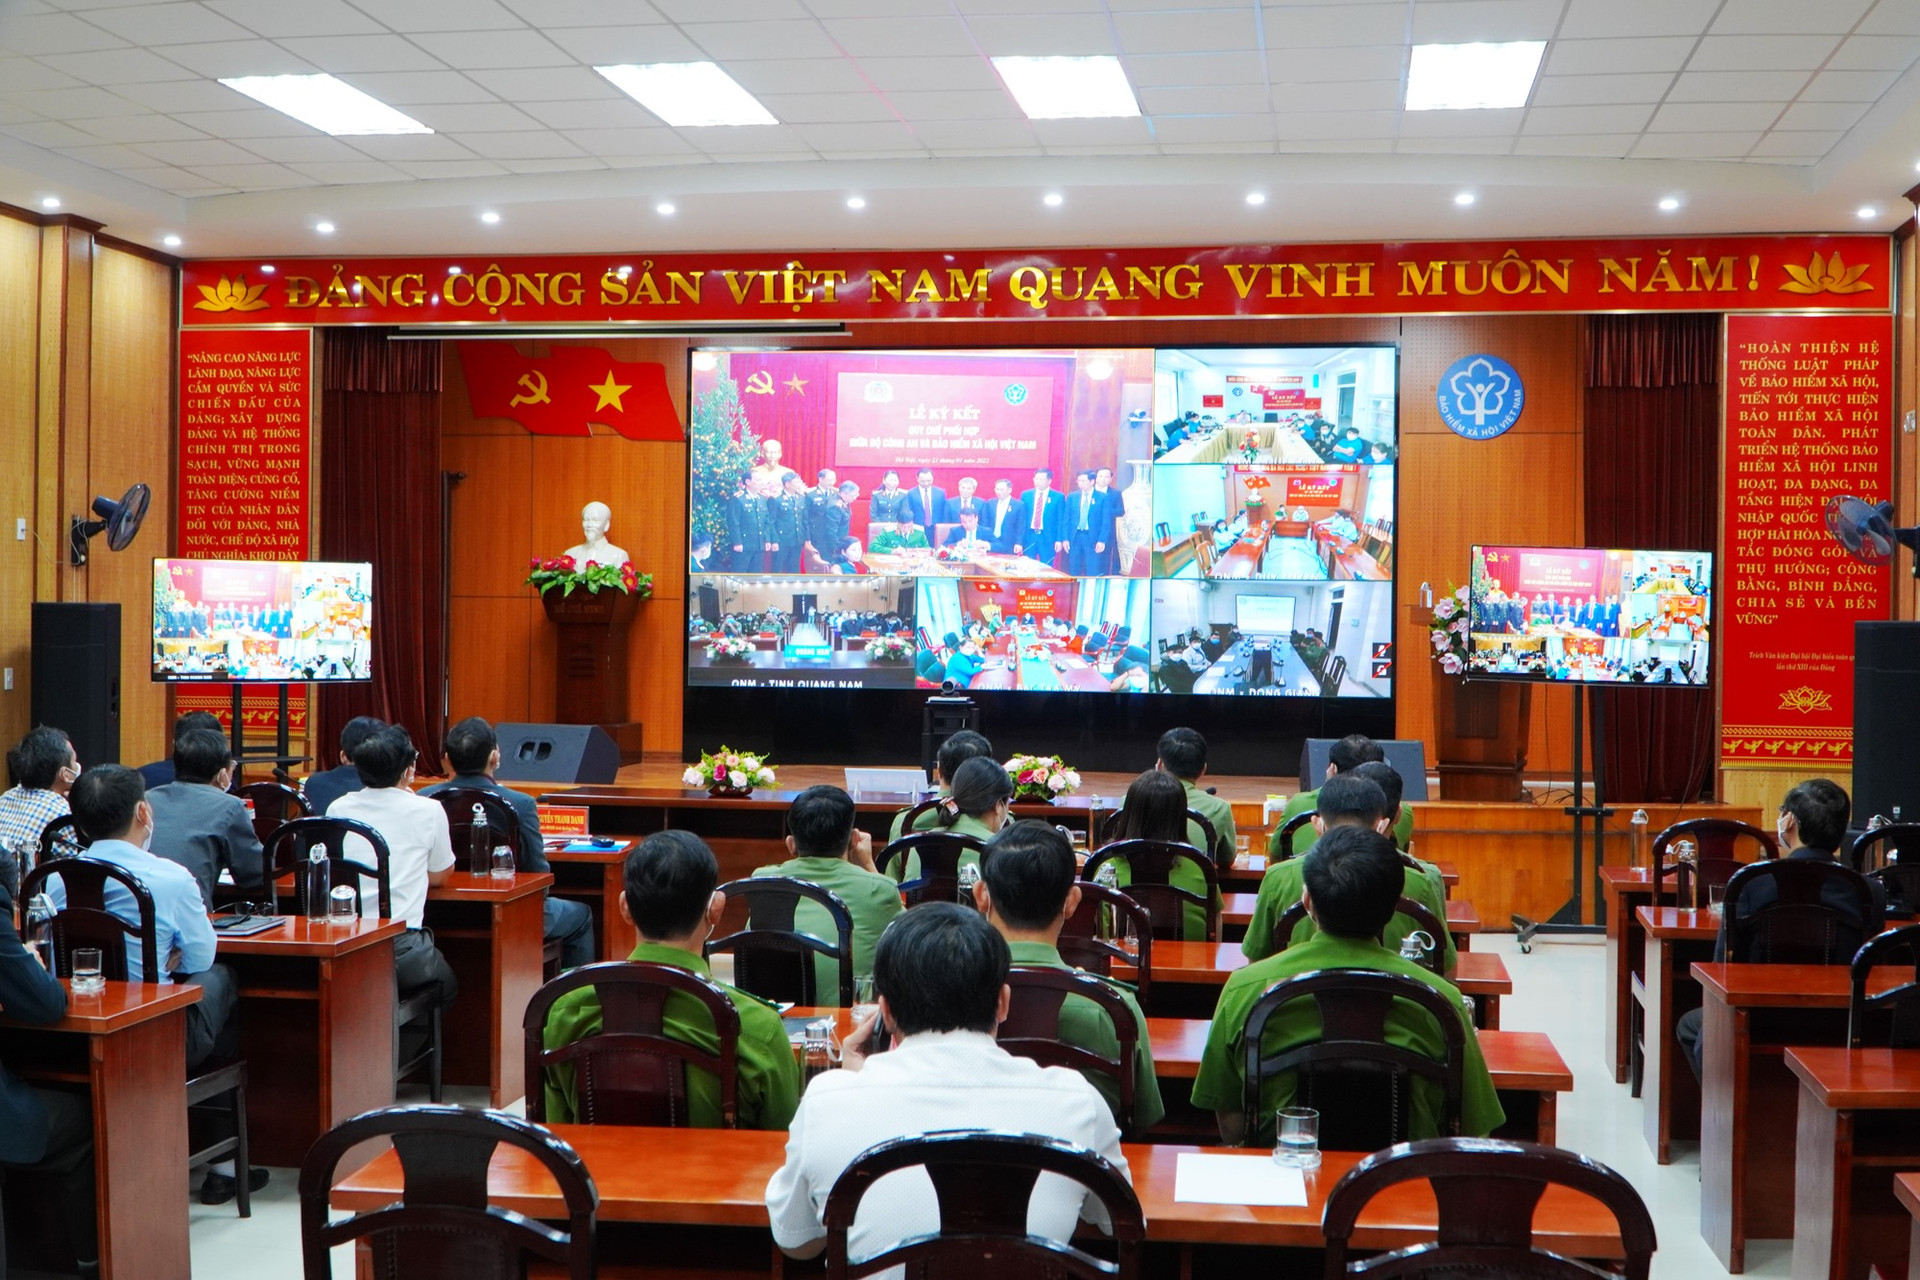 Lễ ký kết quy chế phối hợp trực tuyến giữa Bảo hiểm xã hội Việt Nam và Bộ Công an. Ảnh: D.L